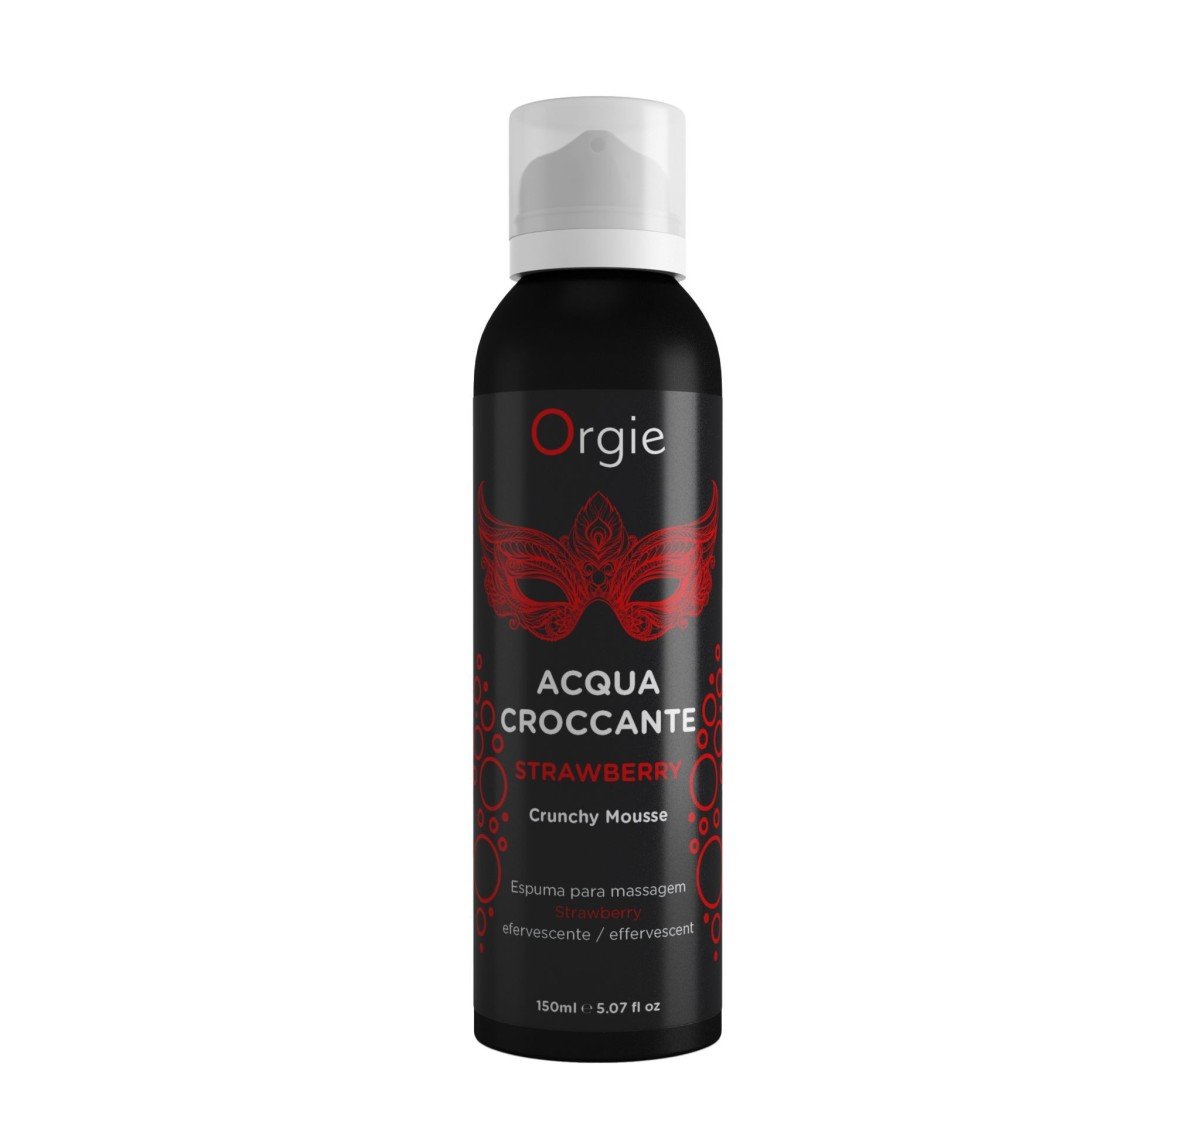 Orgie Acqua Croccante Strawberry 150 ml, šumivá pěna pro masáž a předehru